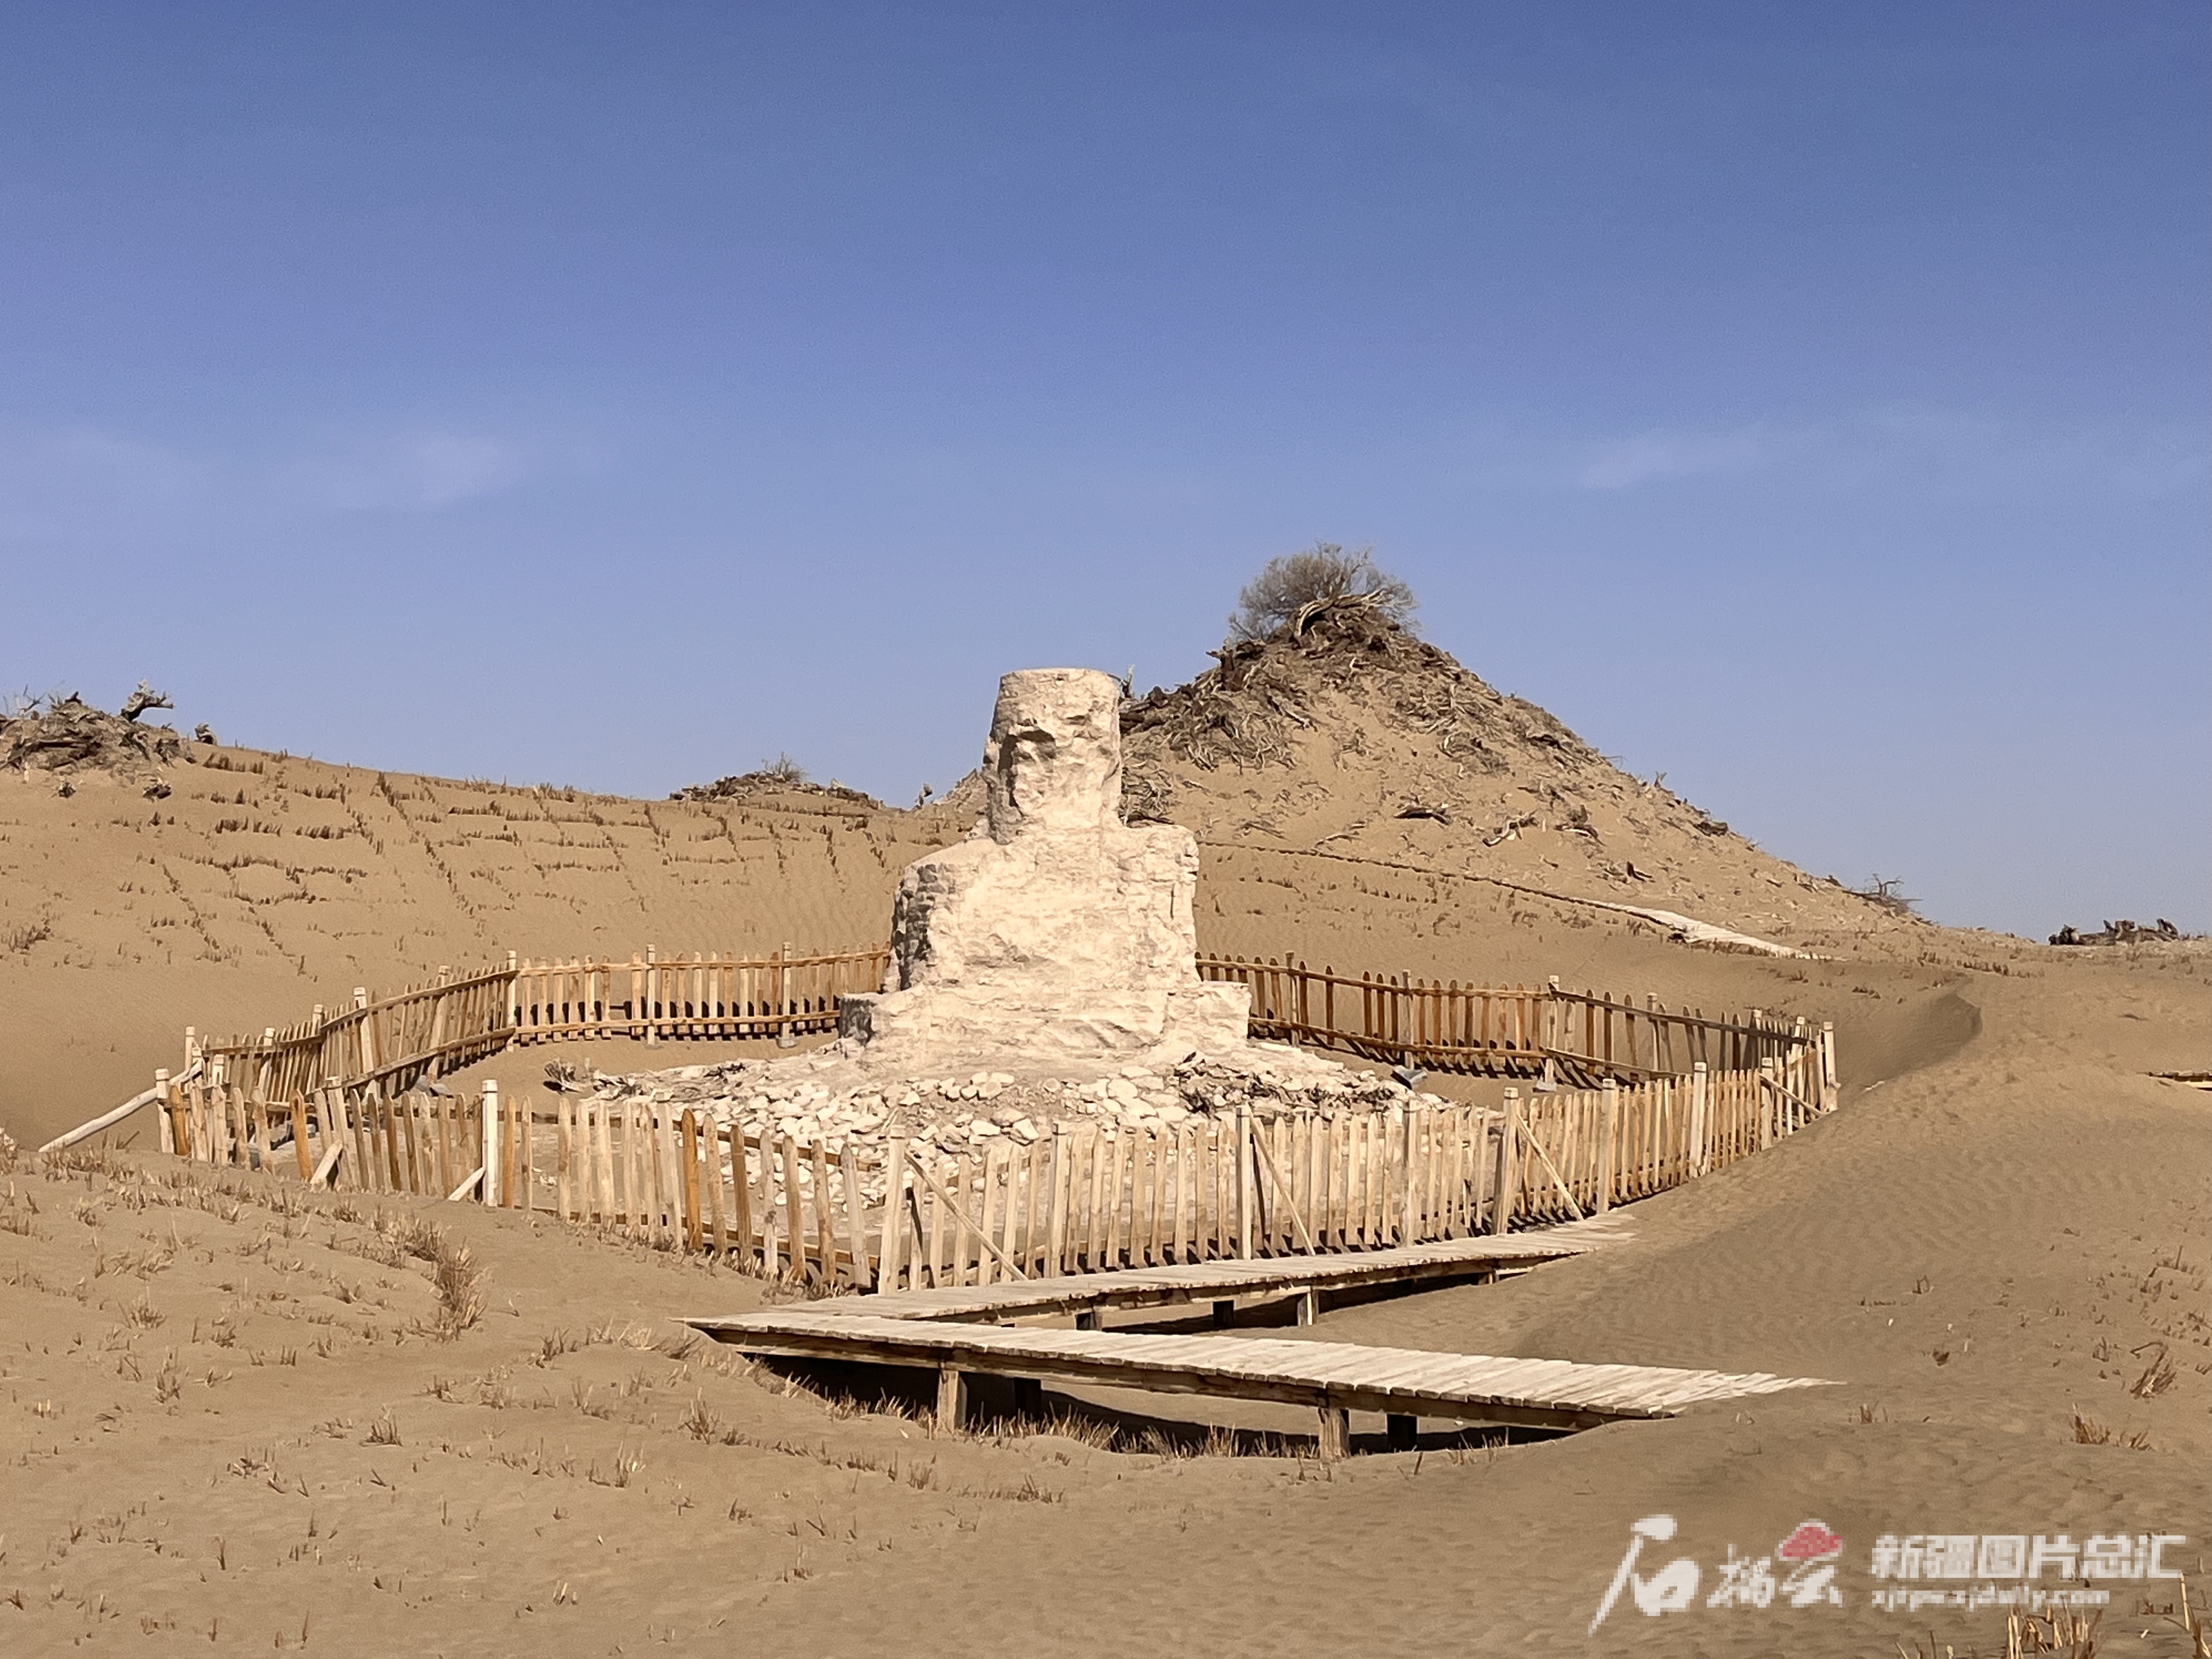 尼雅遗址中心地带，是一座乳白色的佛塔。石榴云/新疆日报记者王晶晶摄